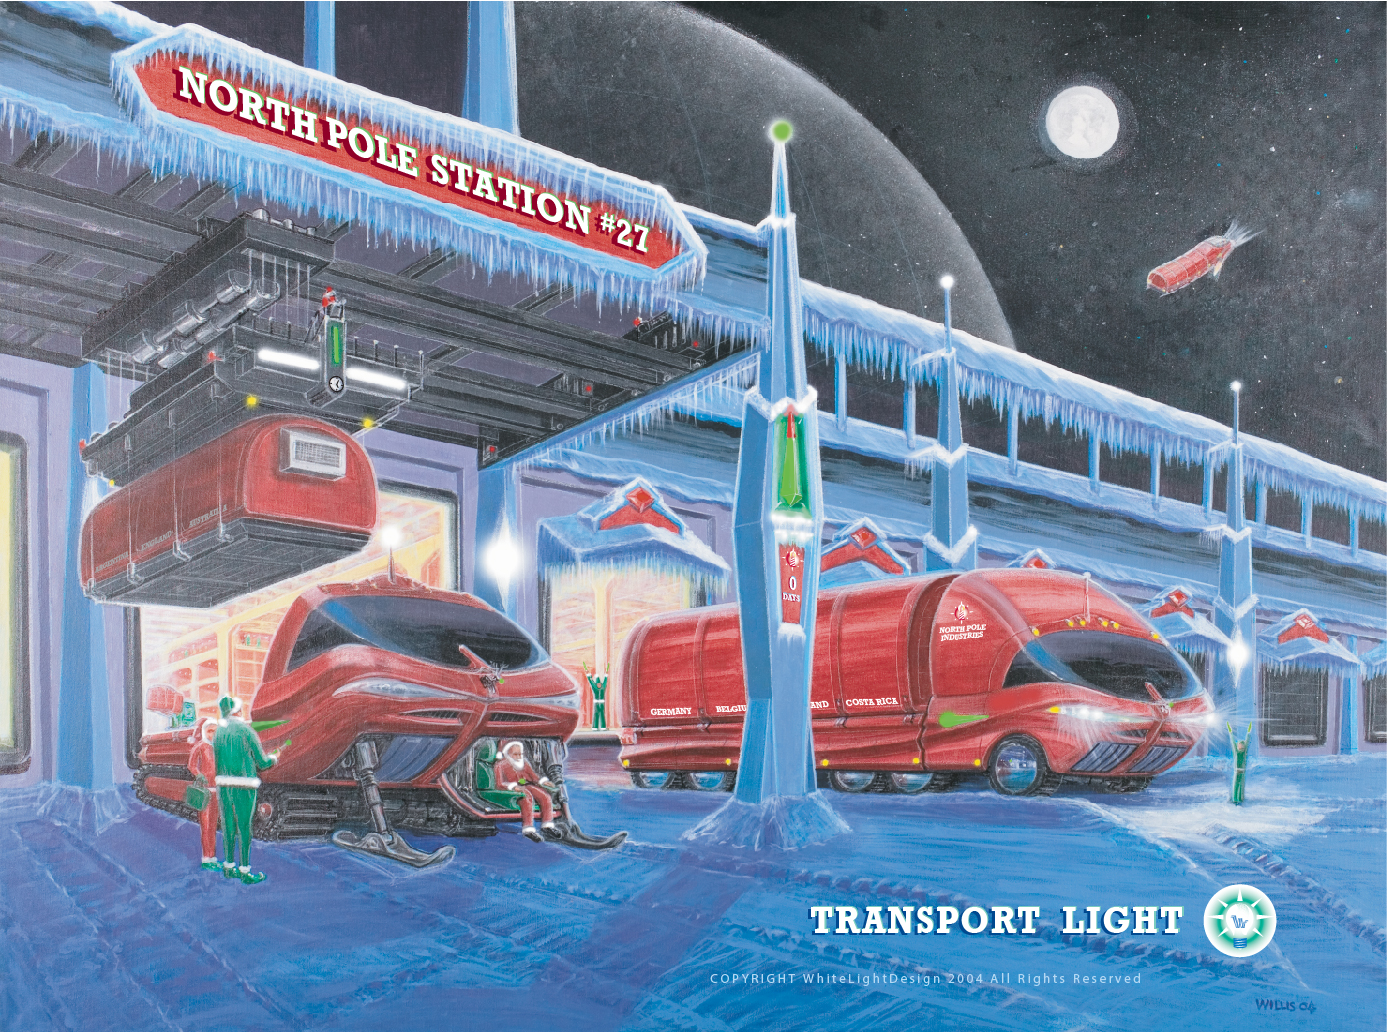 Transport Light Holiday Card 2003